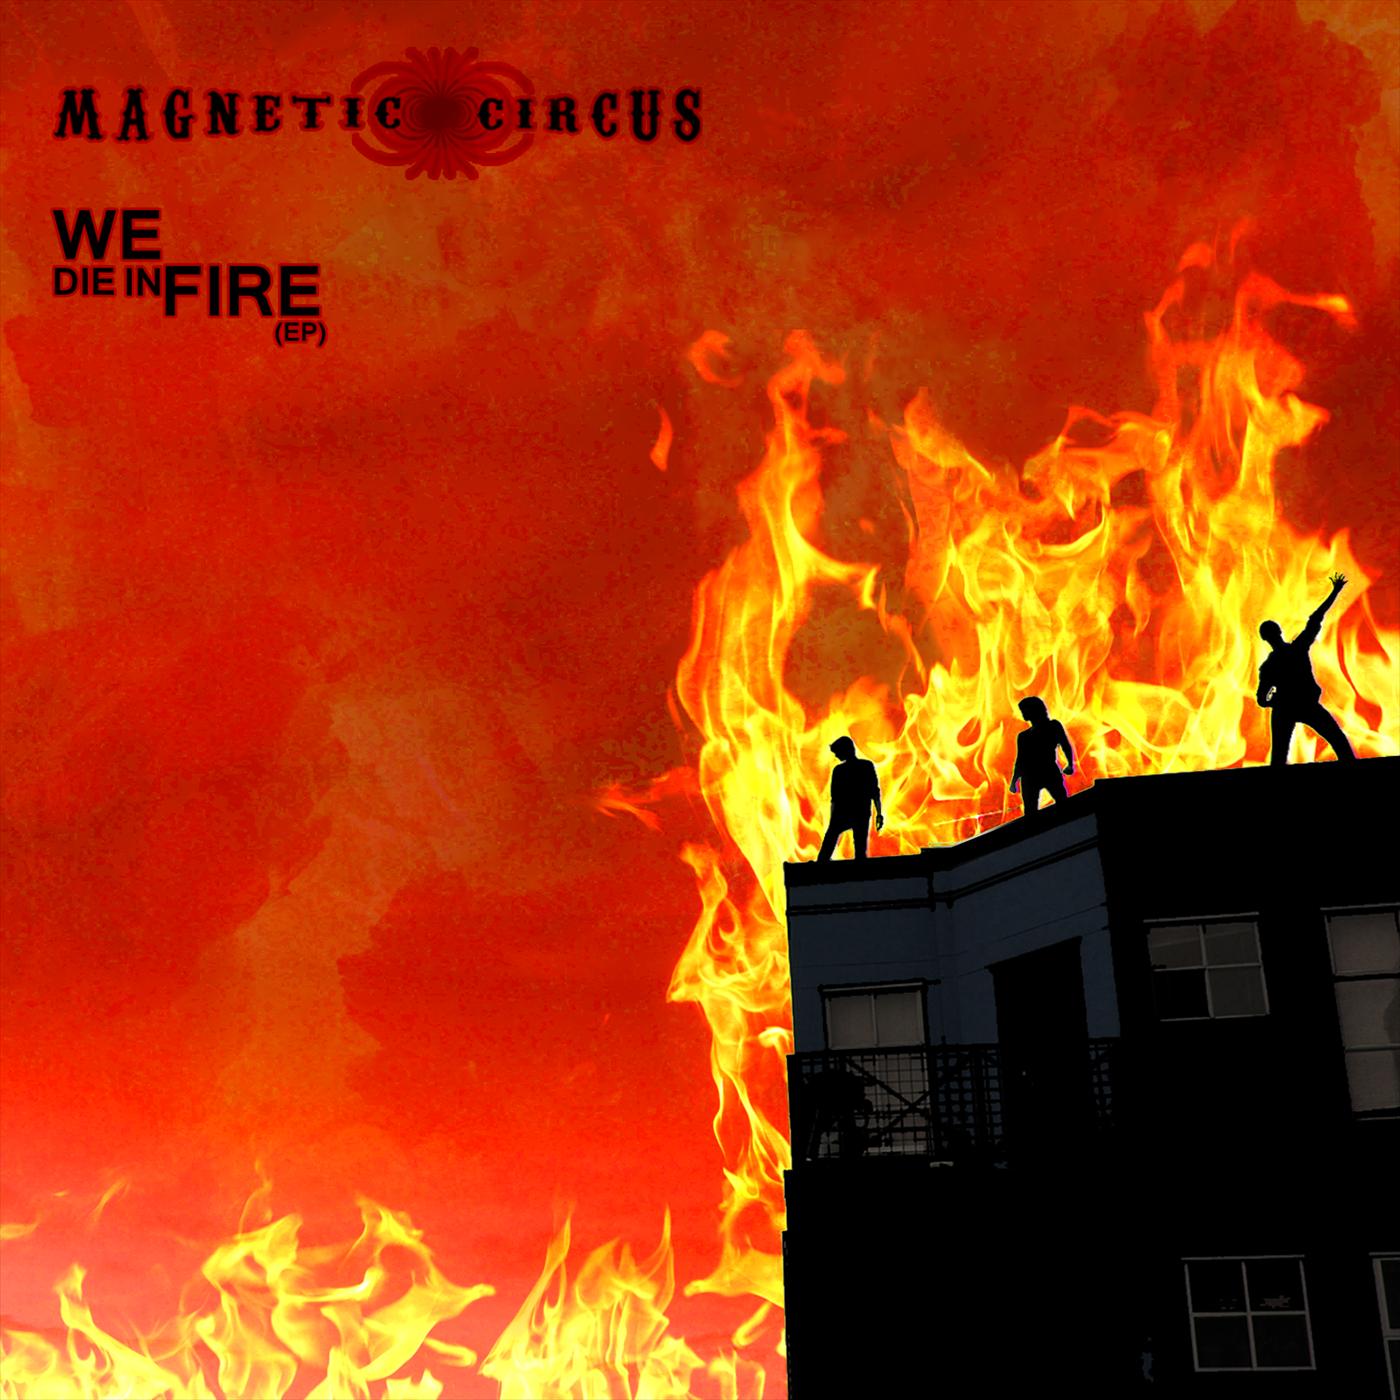 We Die in Fire